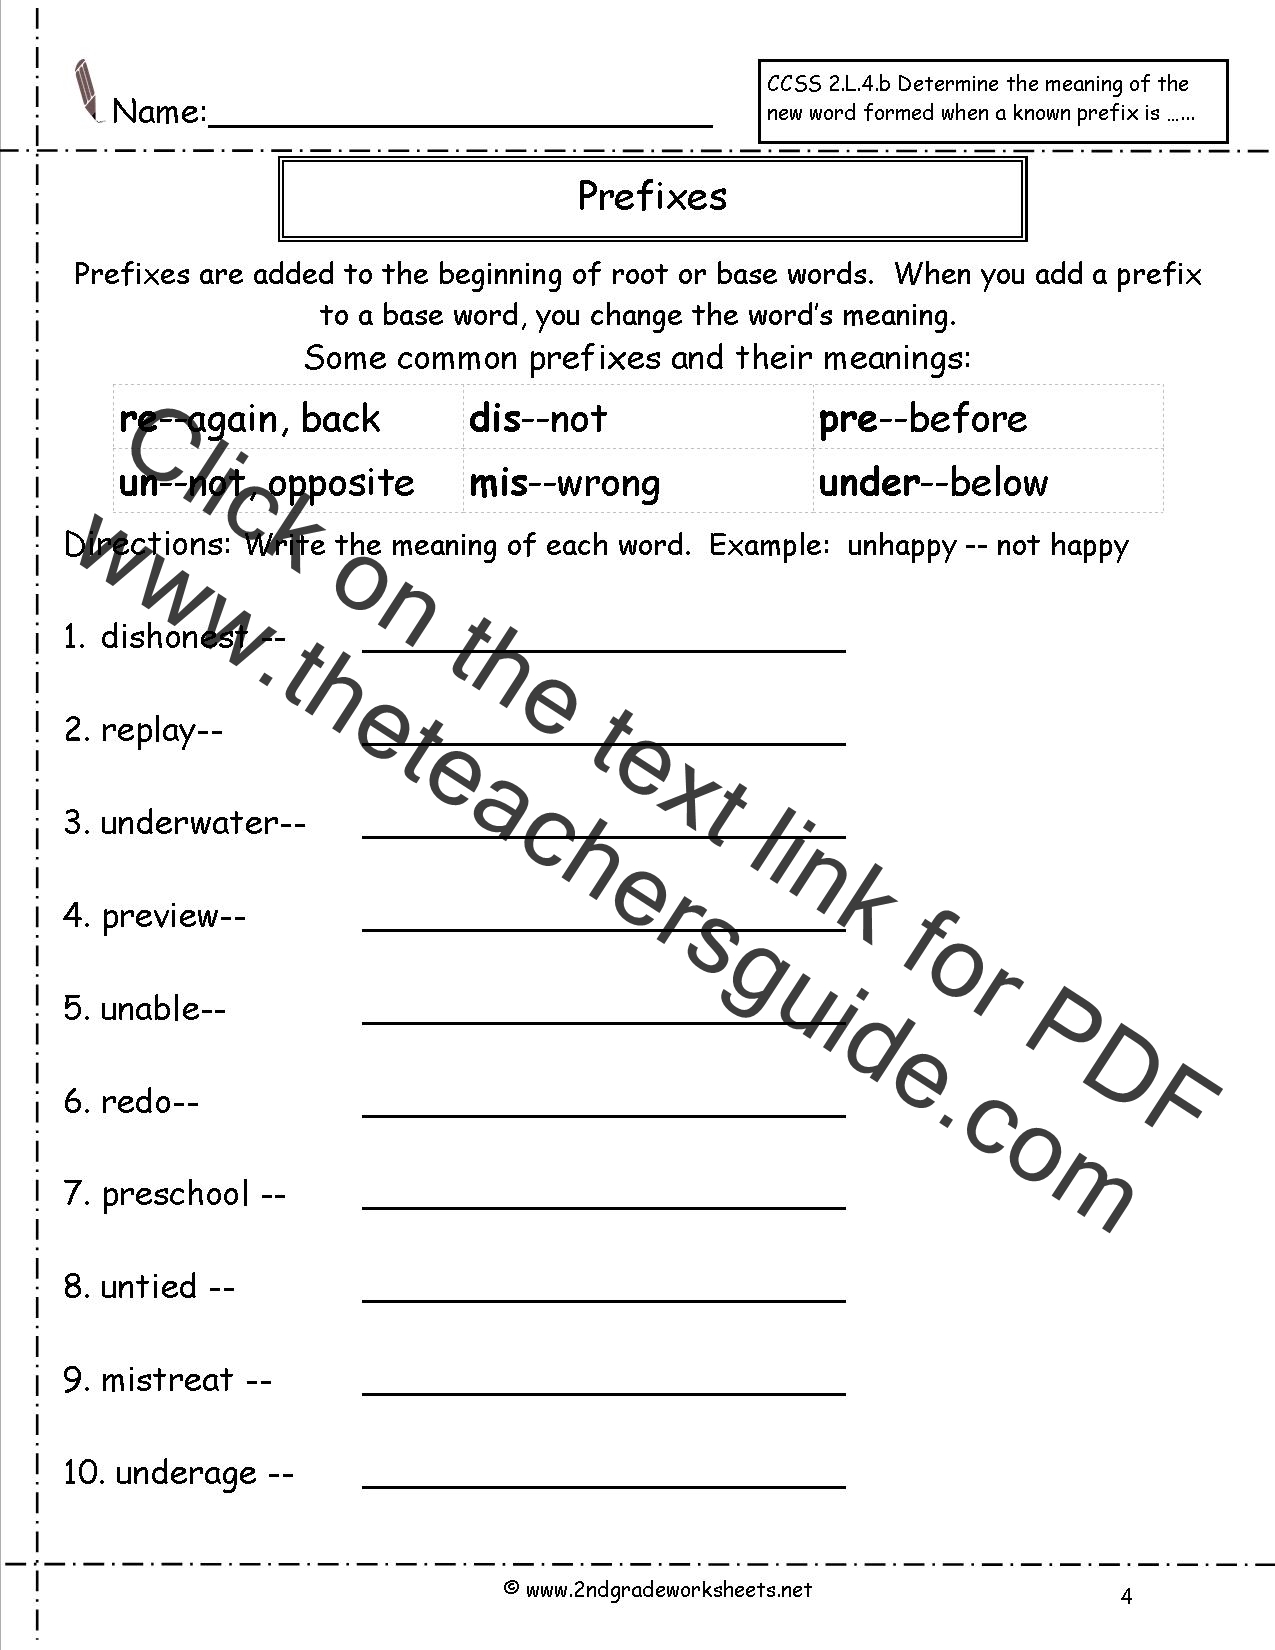 Prefixes Worksheet 2nd Grade